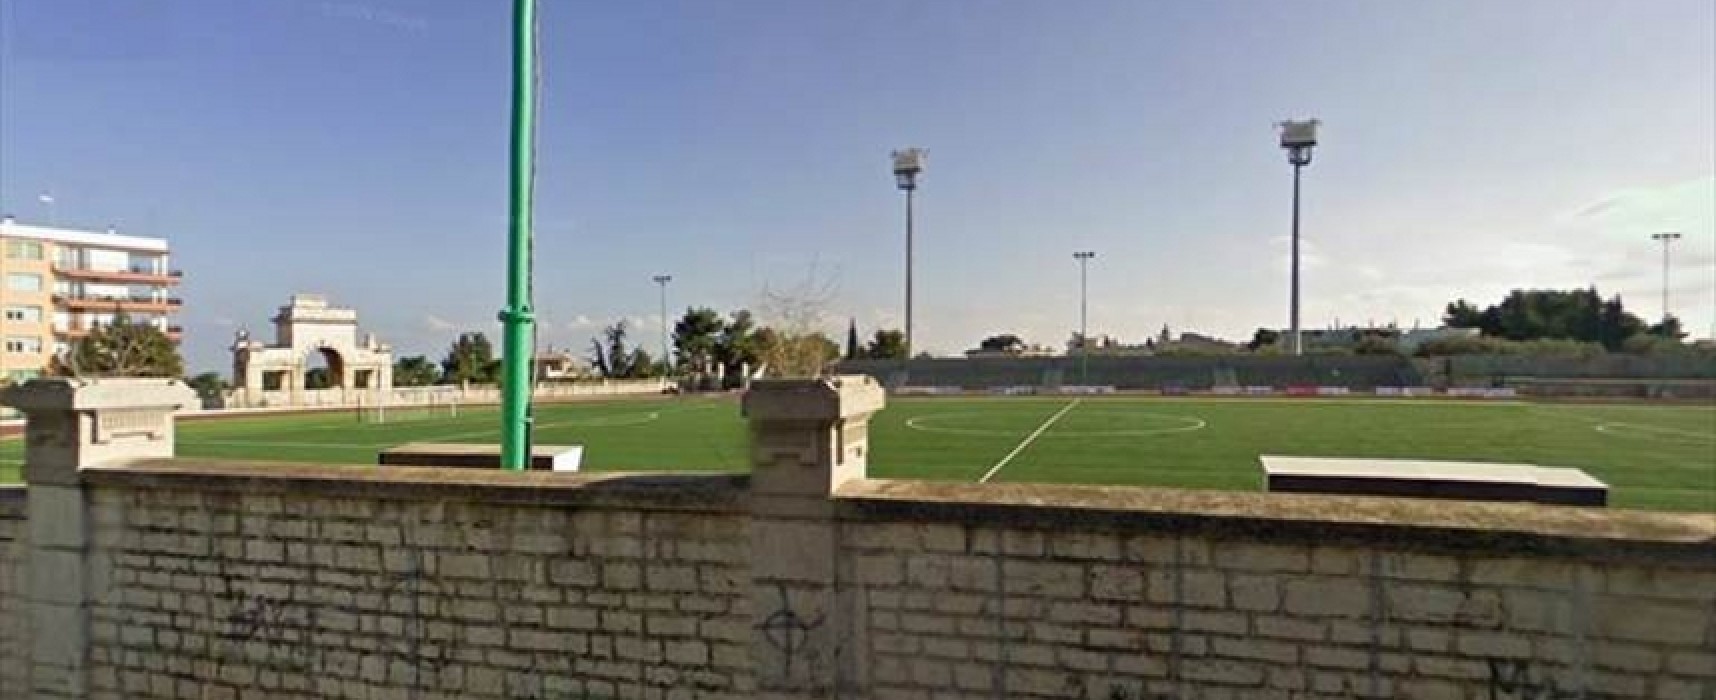 Campo “Di Liddo” non idoneo, Unione Calcio-Atletico Vieste di coppa si gioca a Terlizzi